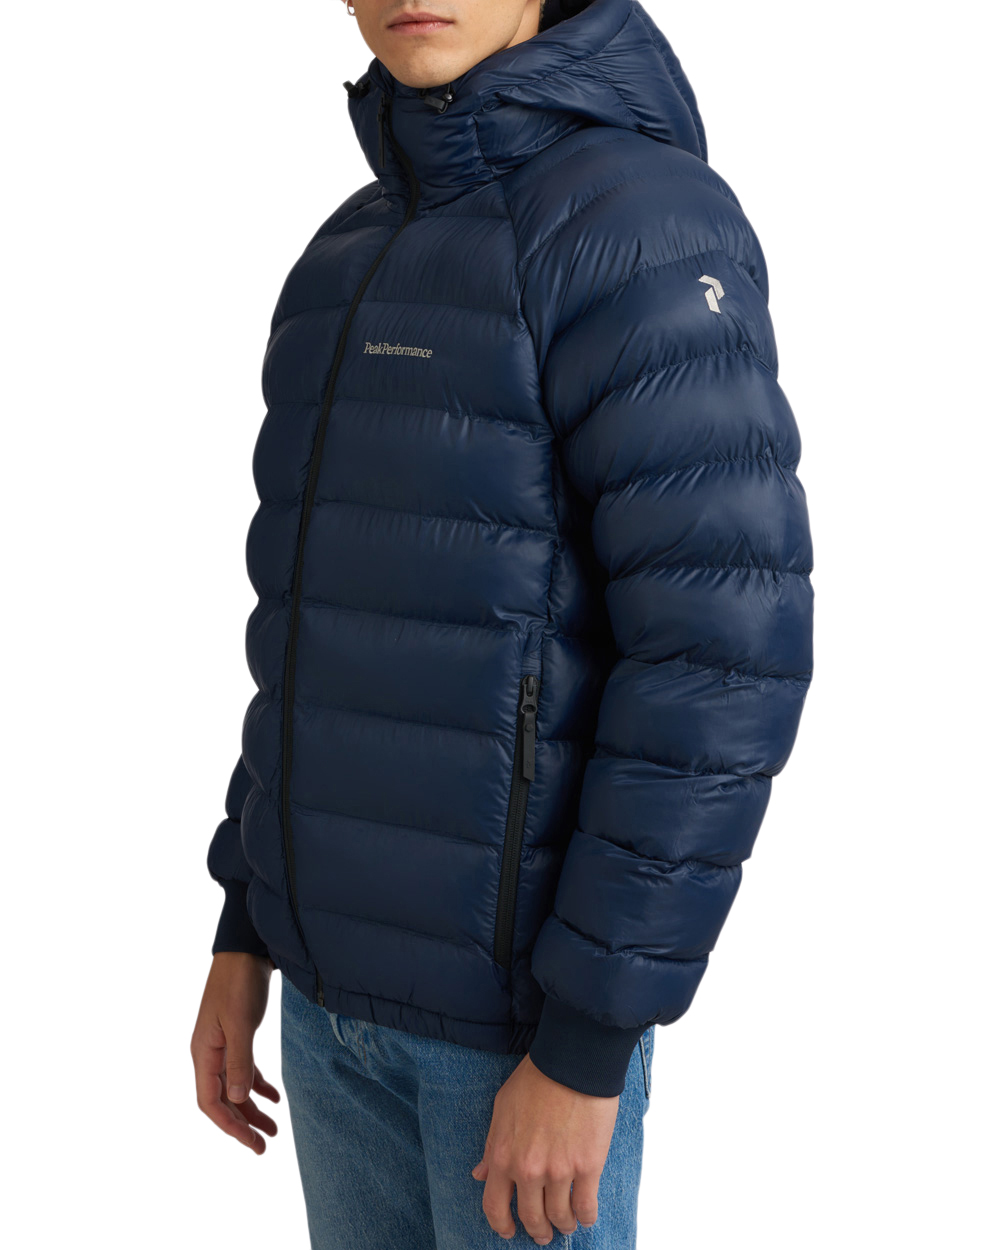 peak-performance-m-tomic-insulated-hood-jacket-2.jpg